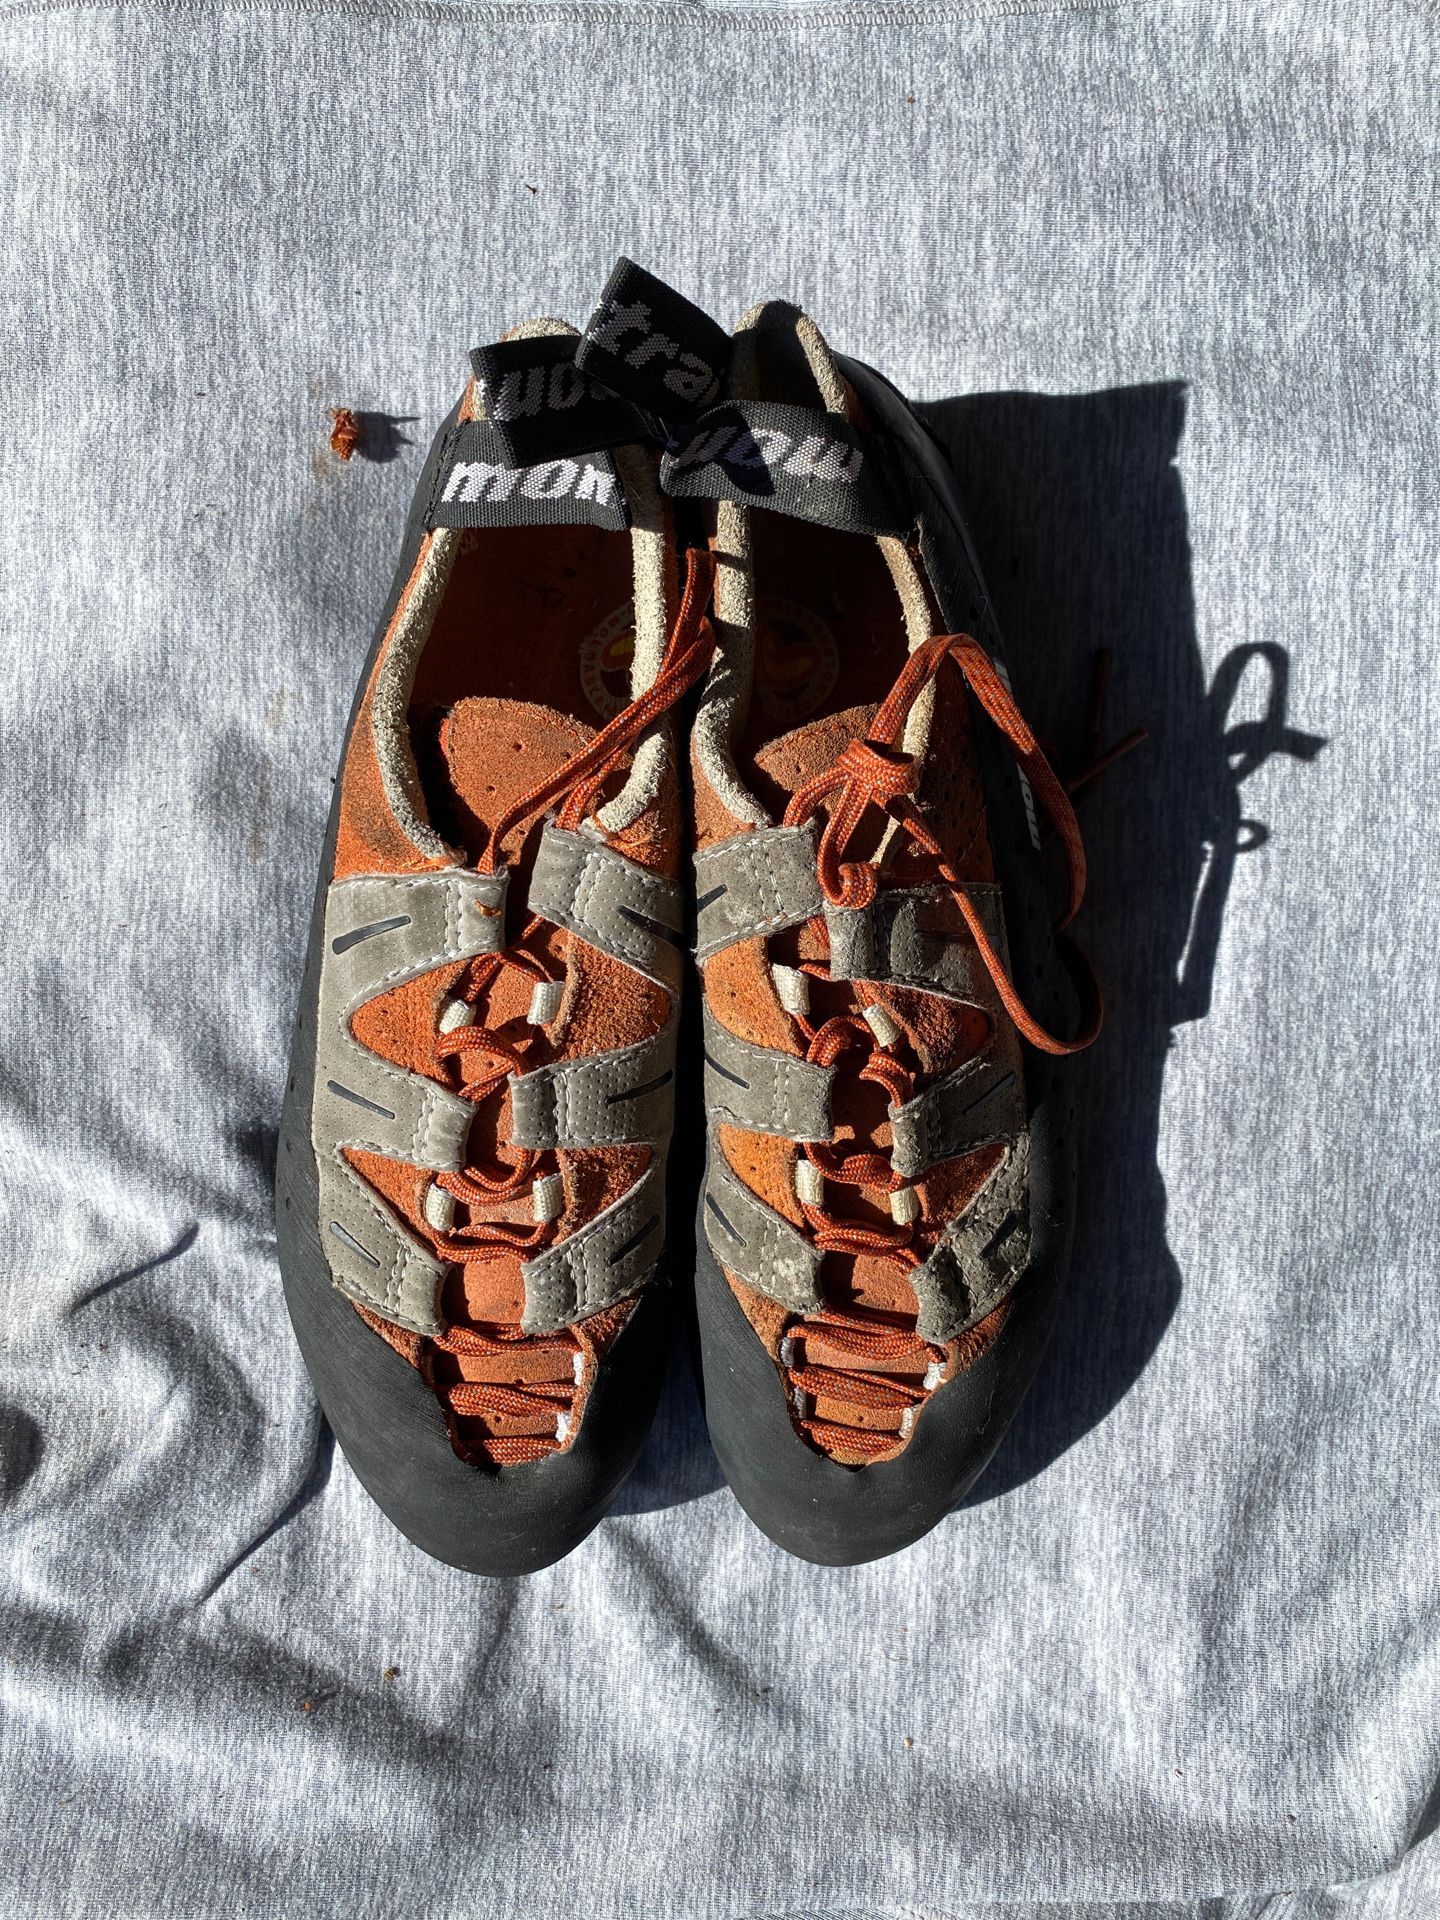 Montrail women’s climbing shoes - size EUR 38